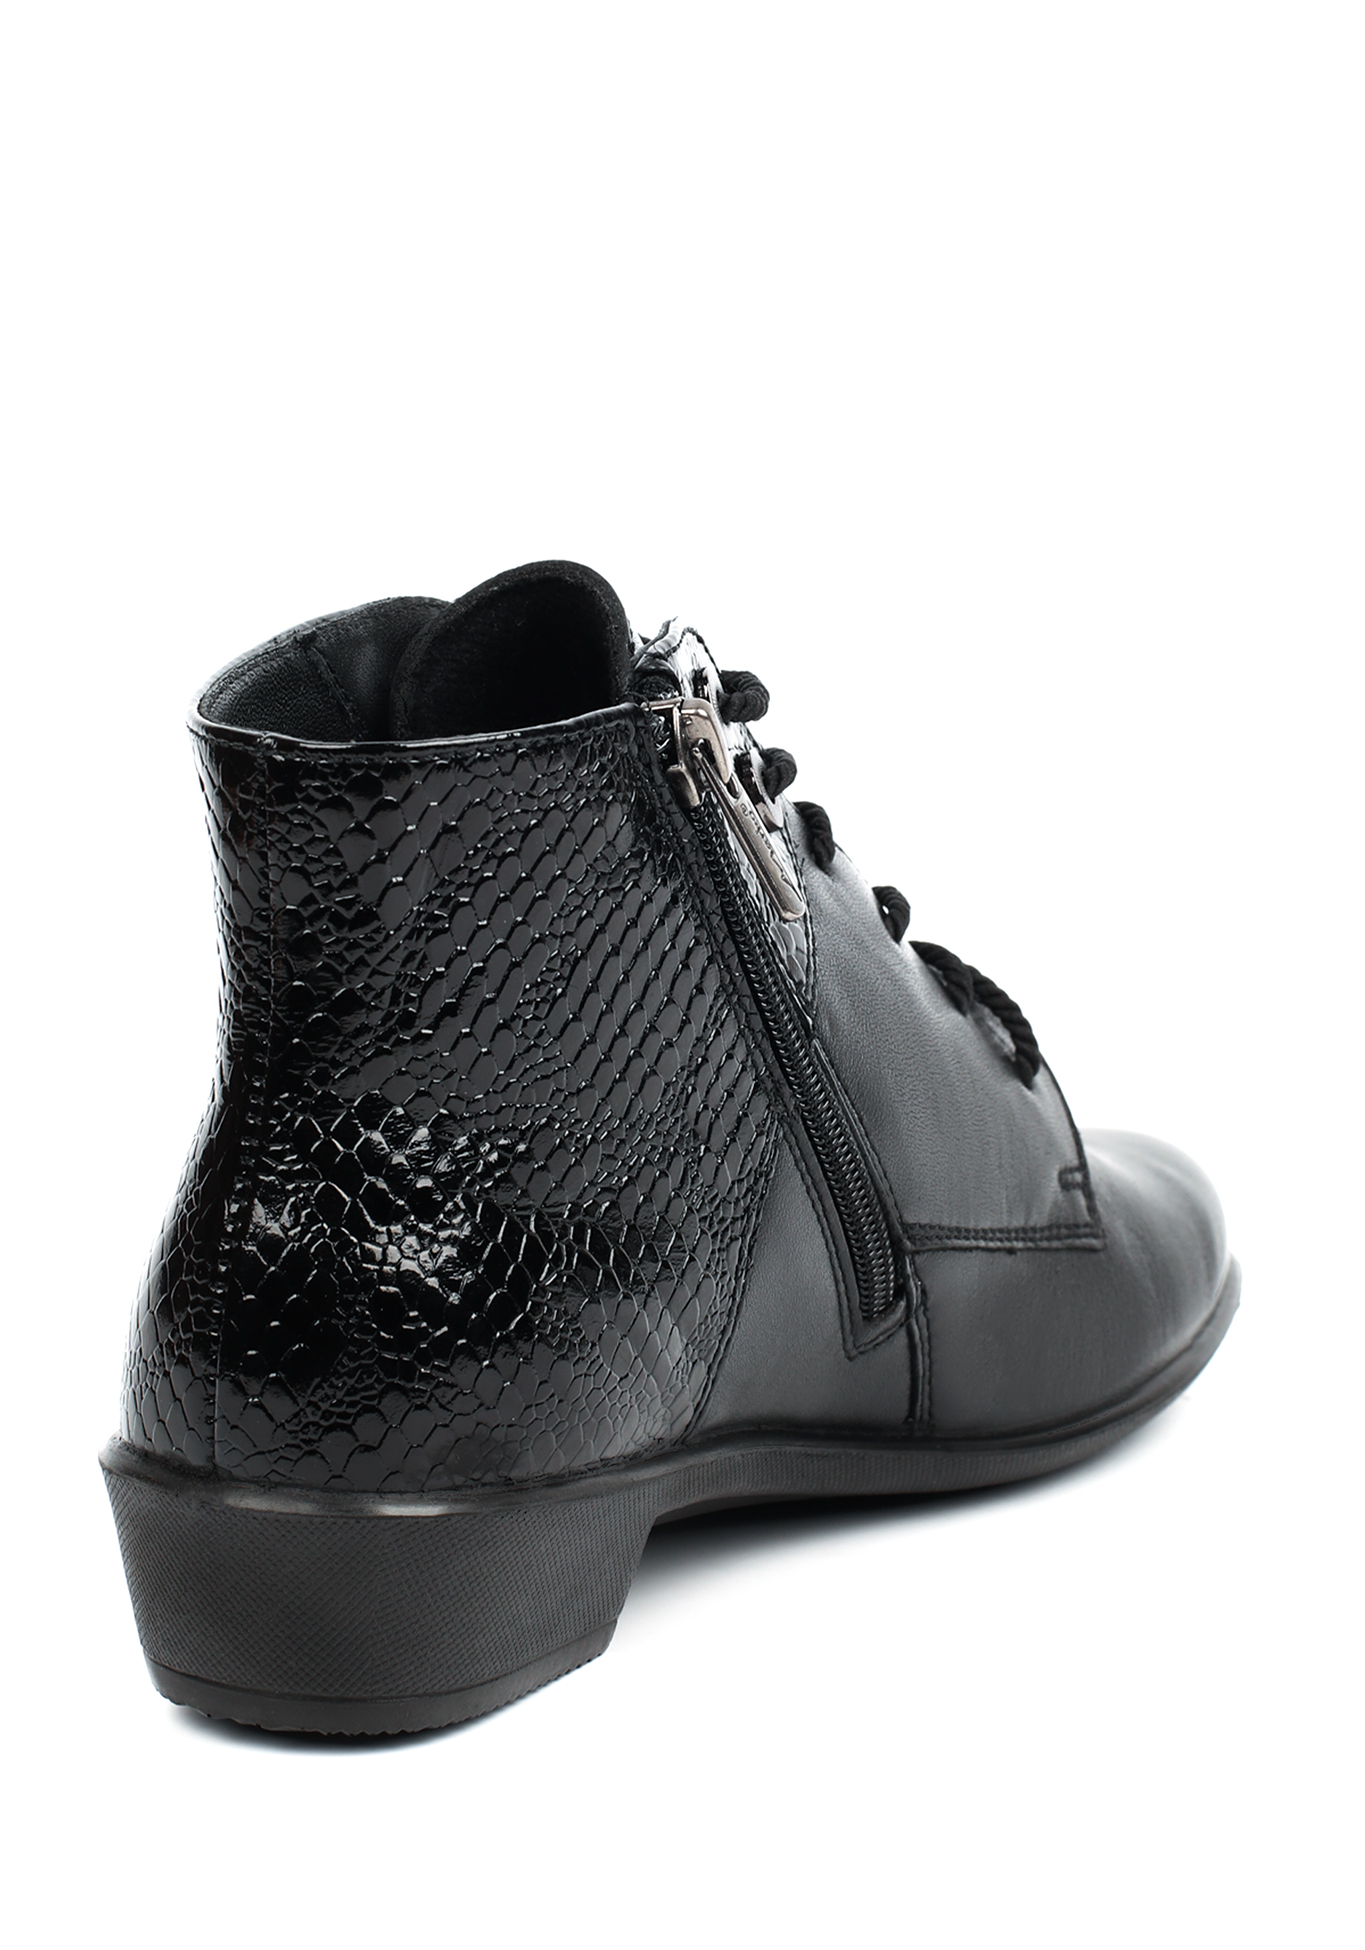 Ботинки женские "Динара" Marko, размер 37, цвет черный - фото 2